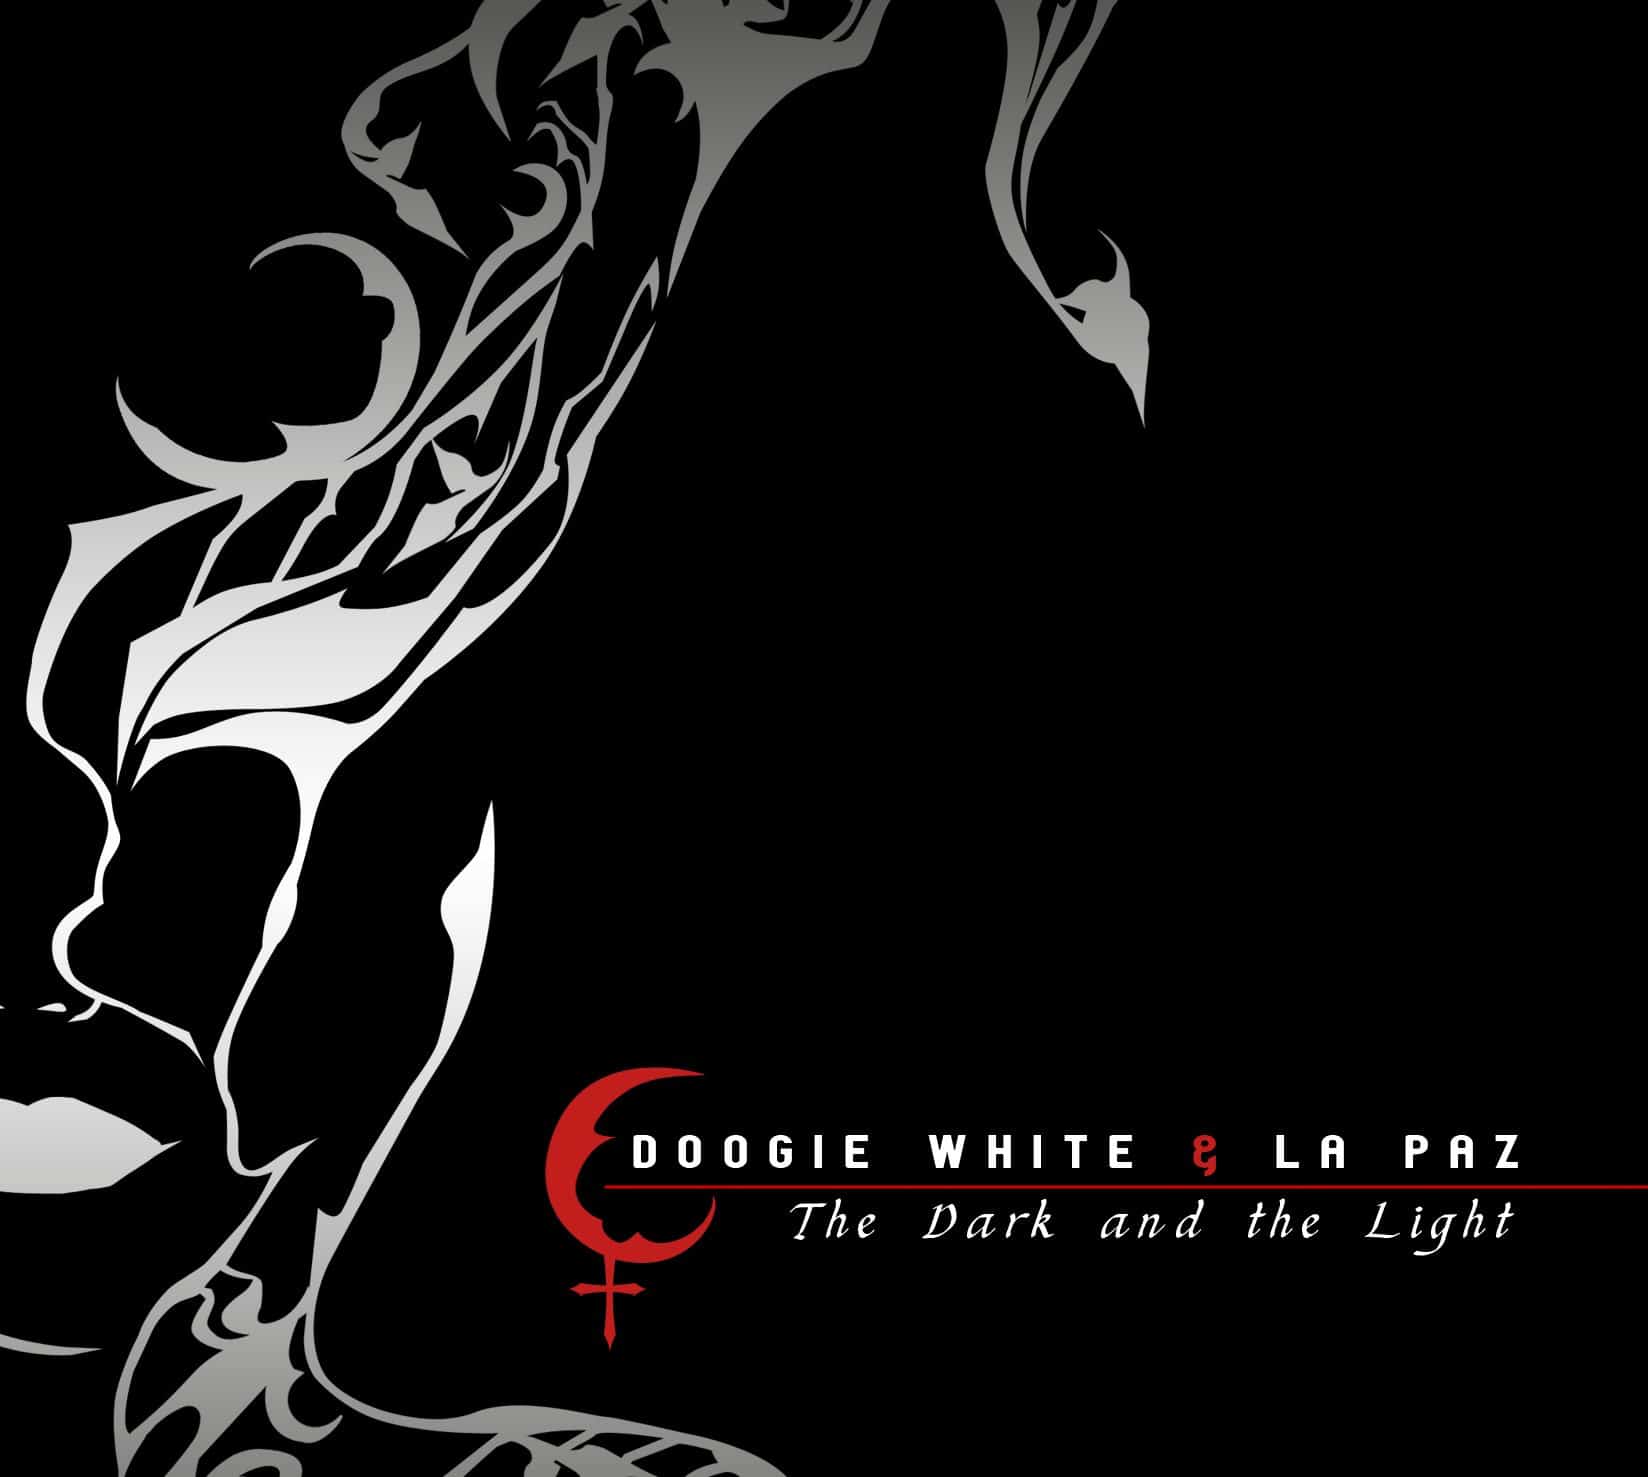 Doogie White & La Paz - znamy tracklistę i okładkę nowej płyty 